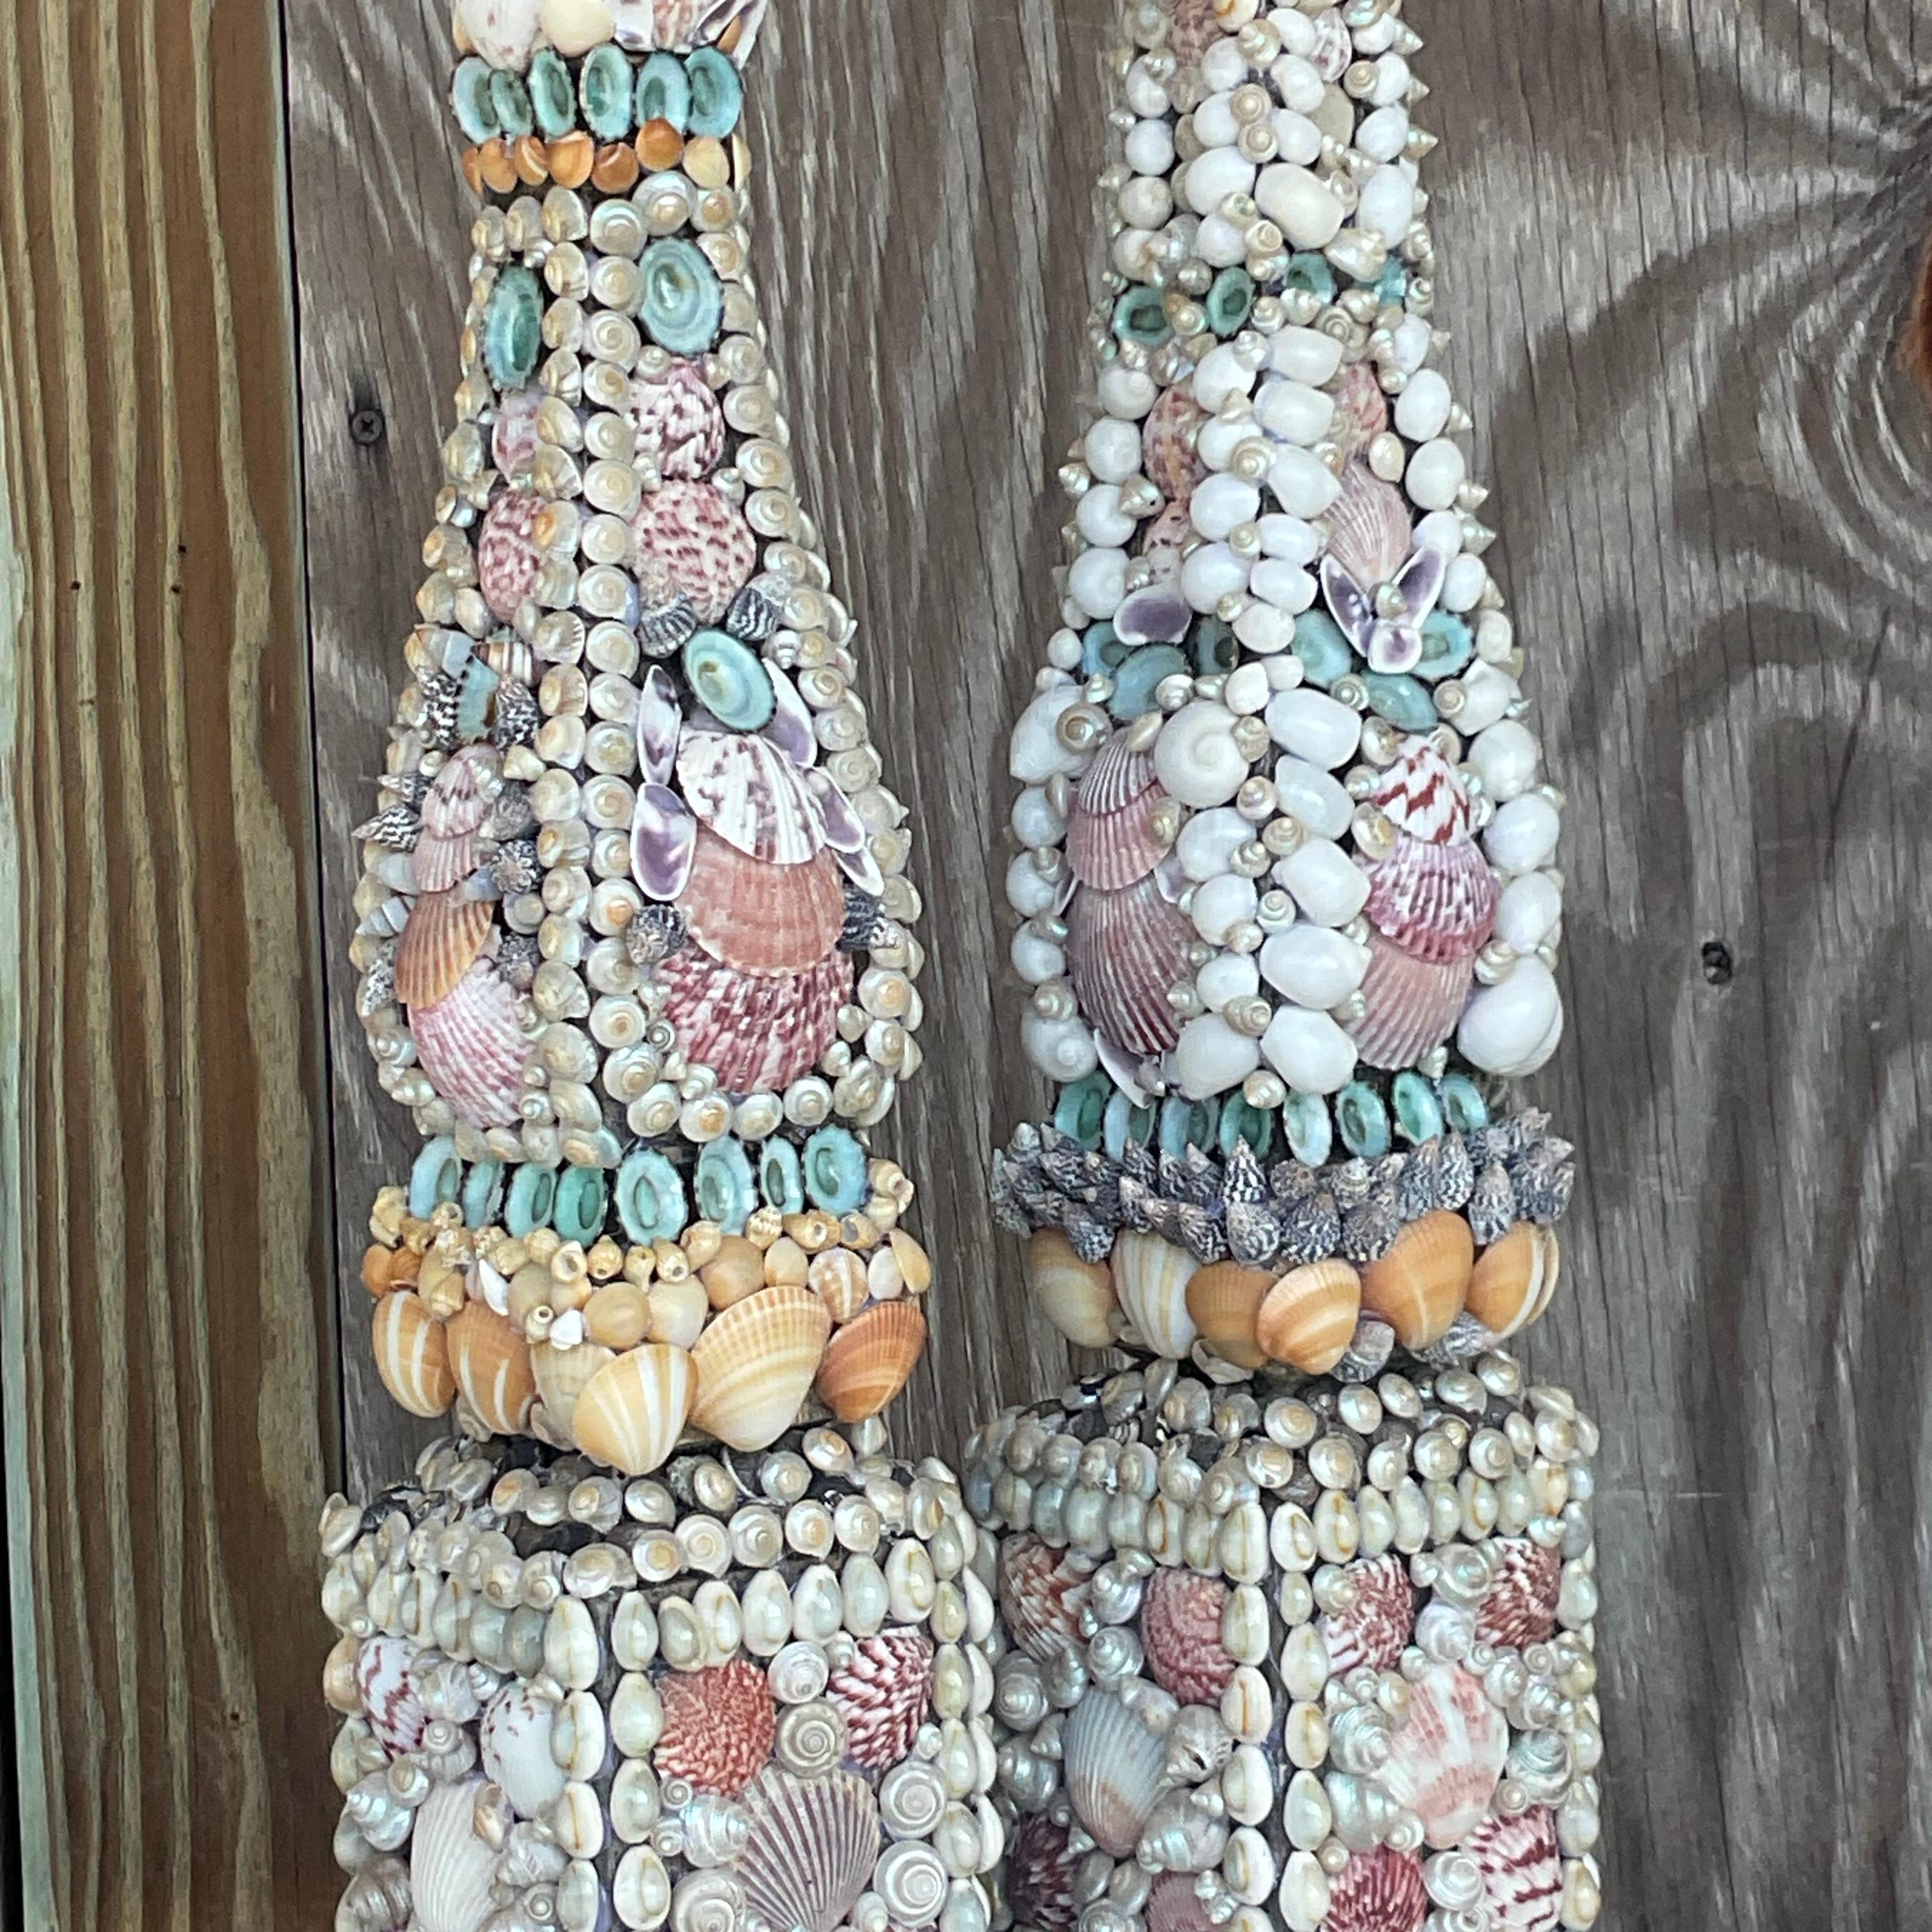 Peppen Sie Ihre Küstendekoration mit unseren Vintage Coastal Shell Encrusted Obelisks auf - ein Set aus zwei exquisiten Stücken, inspiriert von der rauen Schönheit der amerikanischen Küsten. Jeder Obelisk ist sorgfältig mit verkrusteten Muscheln